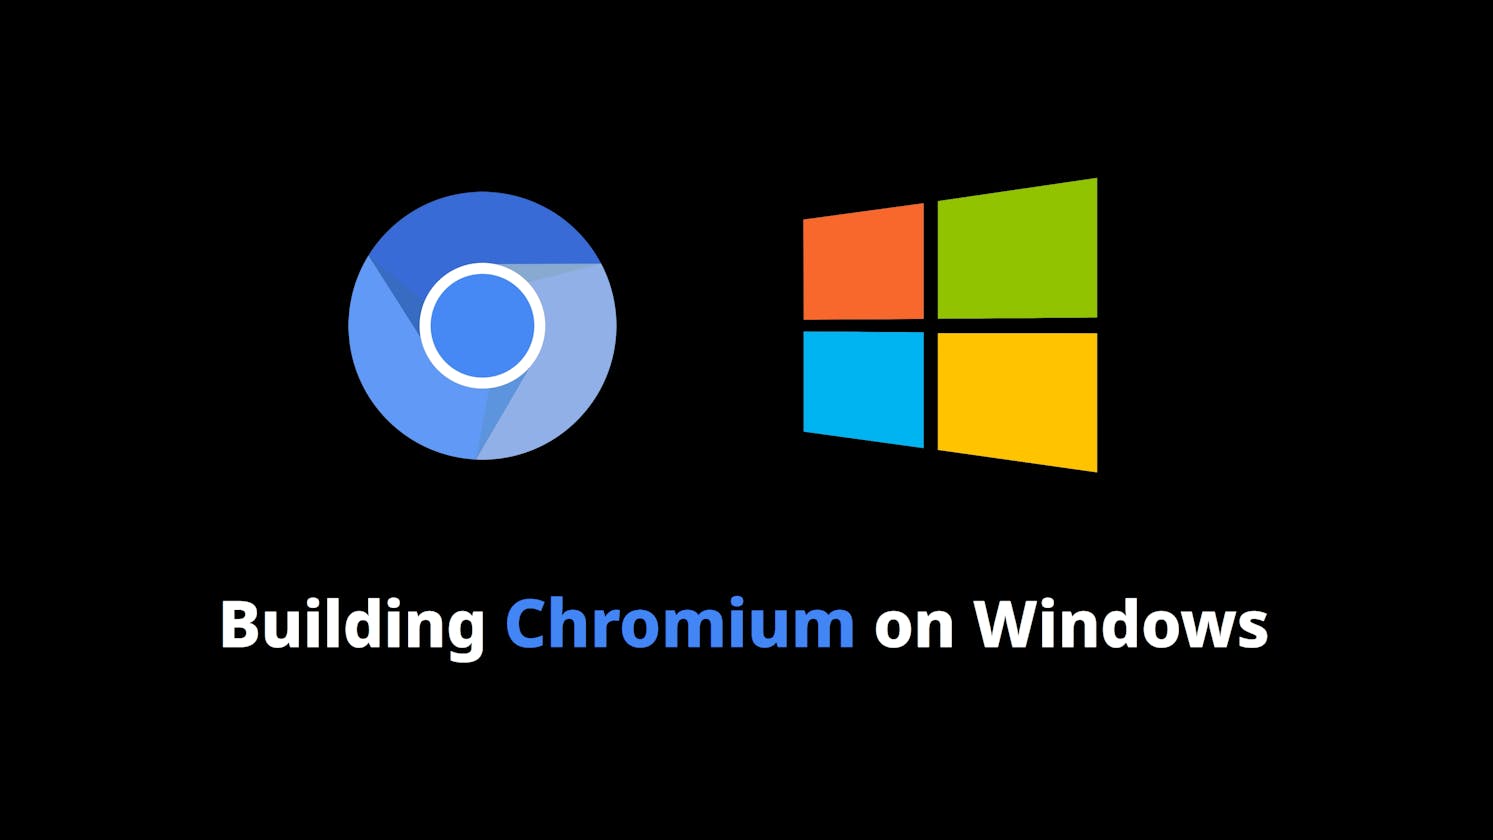 How to Build Chromium on Windows